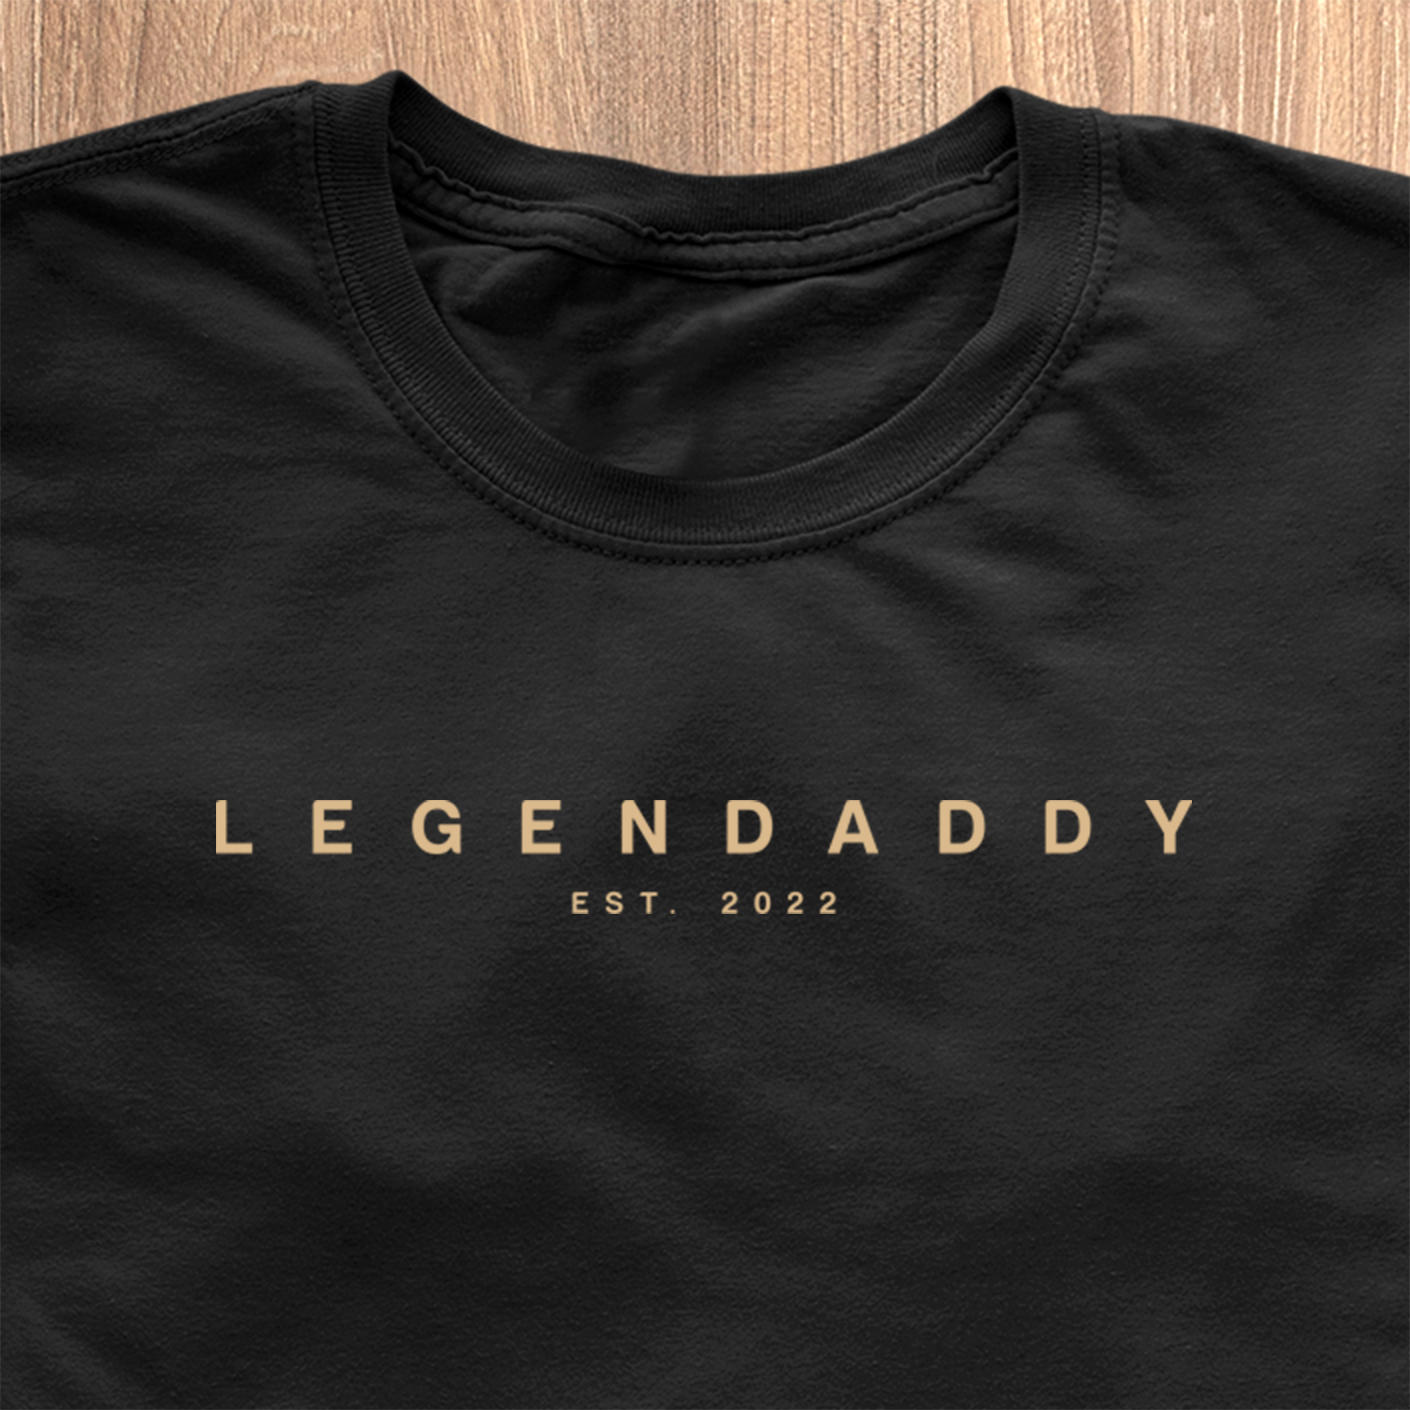 Legendaddy Modern Edition T-shirt - Dato kan tilpasses